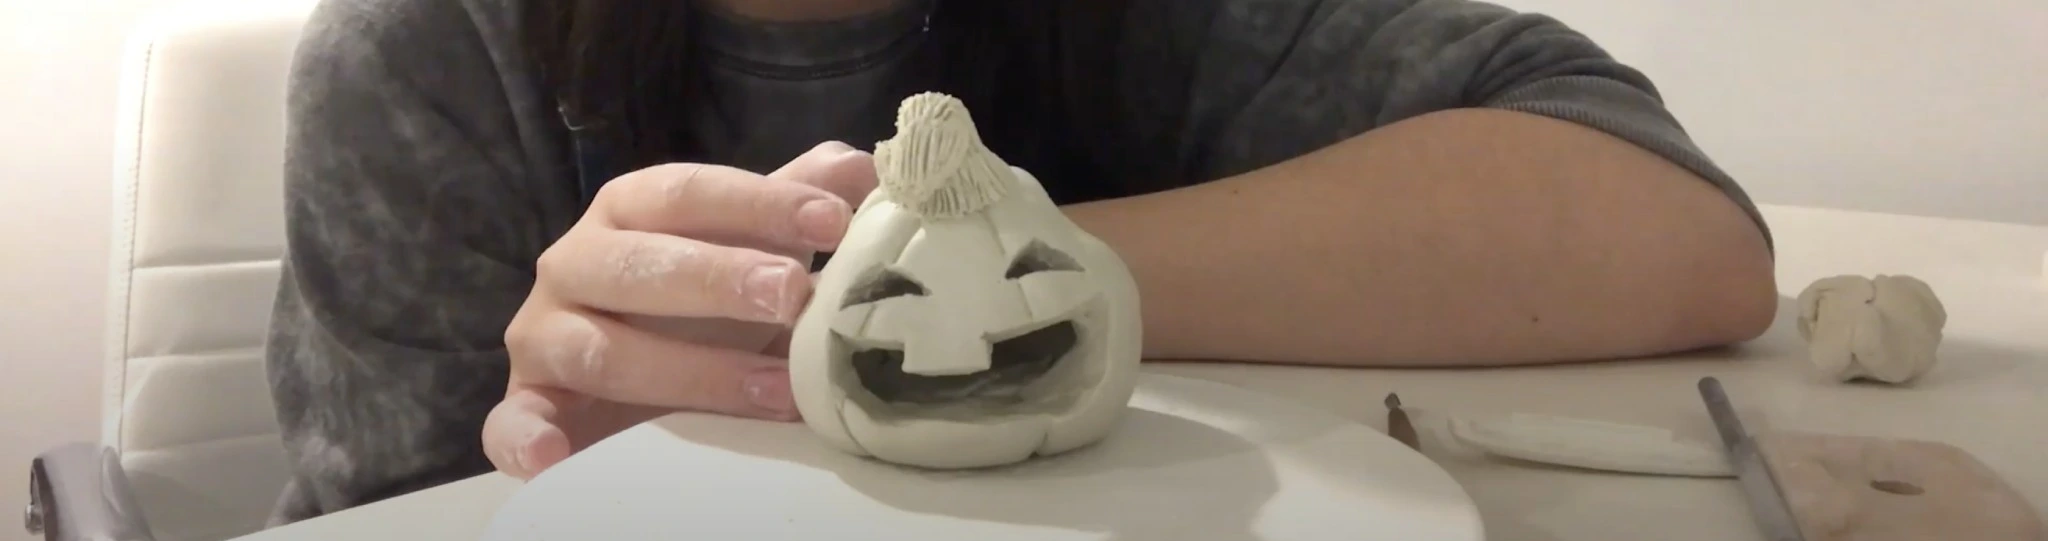 Someone making a ceramic jack-o-lantern pumpkin.